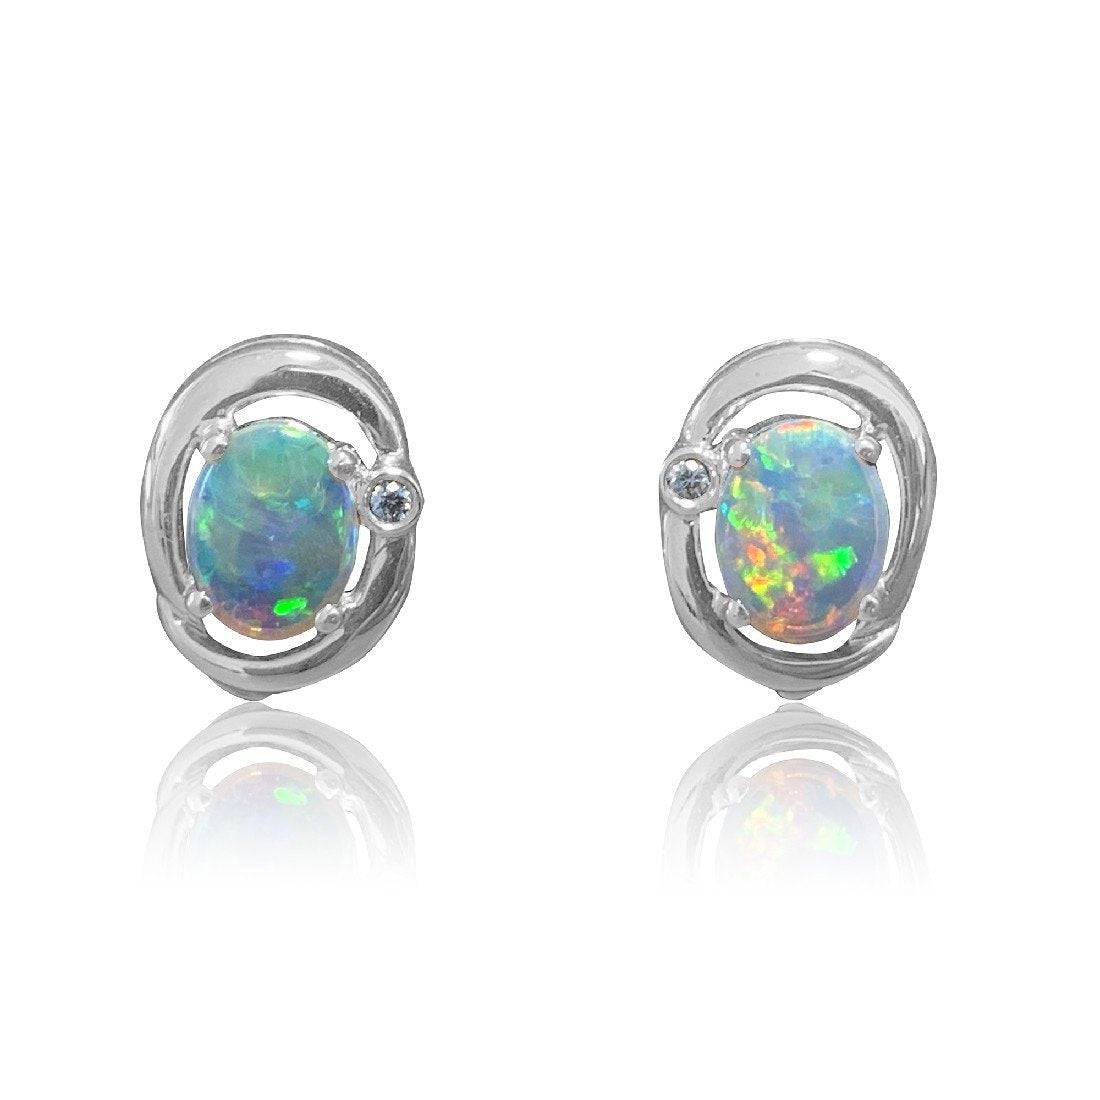 18kt White Gold Crystal Opal earrings - Masterpiece Jewellery Opal & Gems Sydney Australia | Online Shop